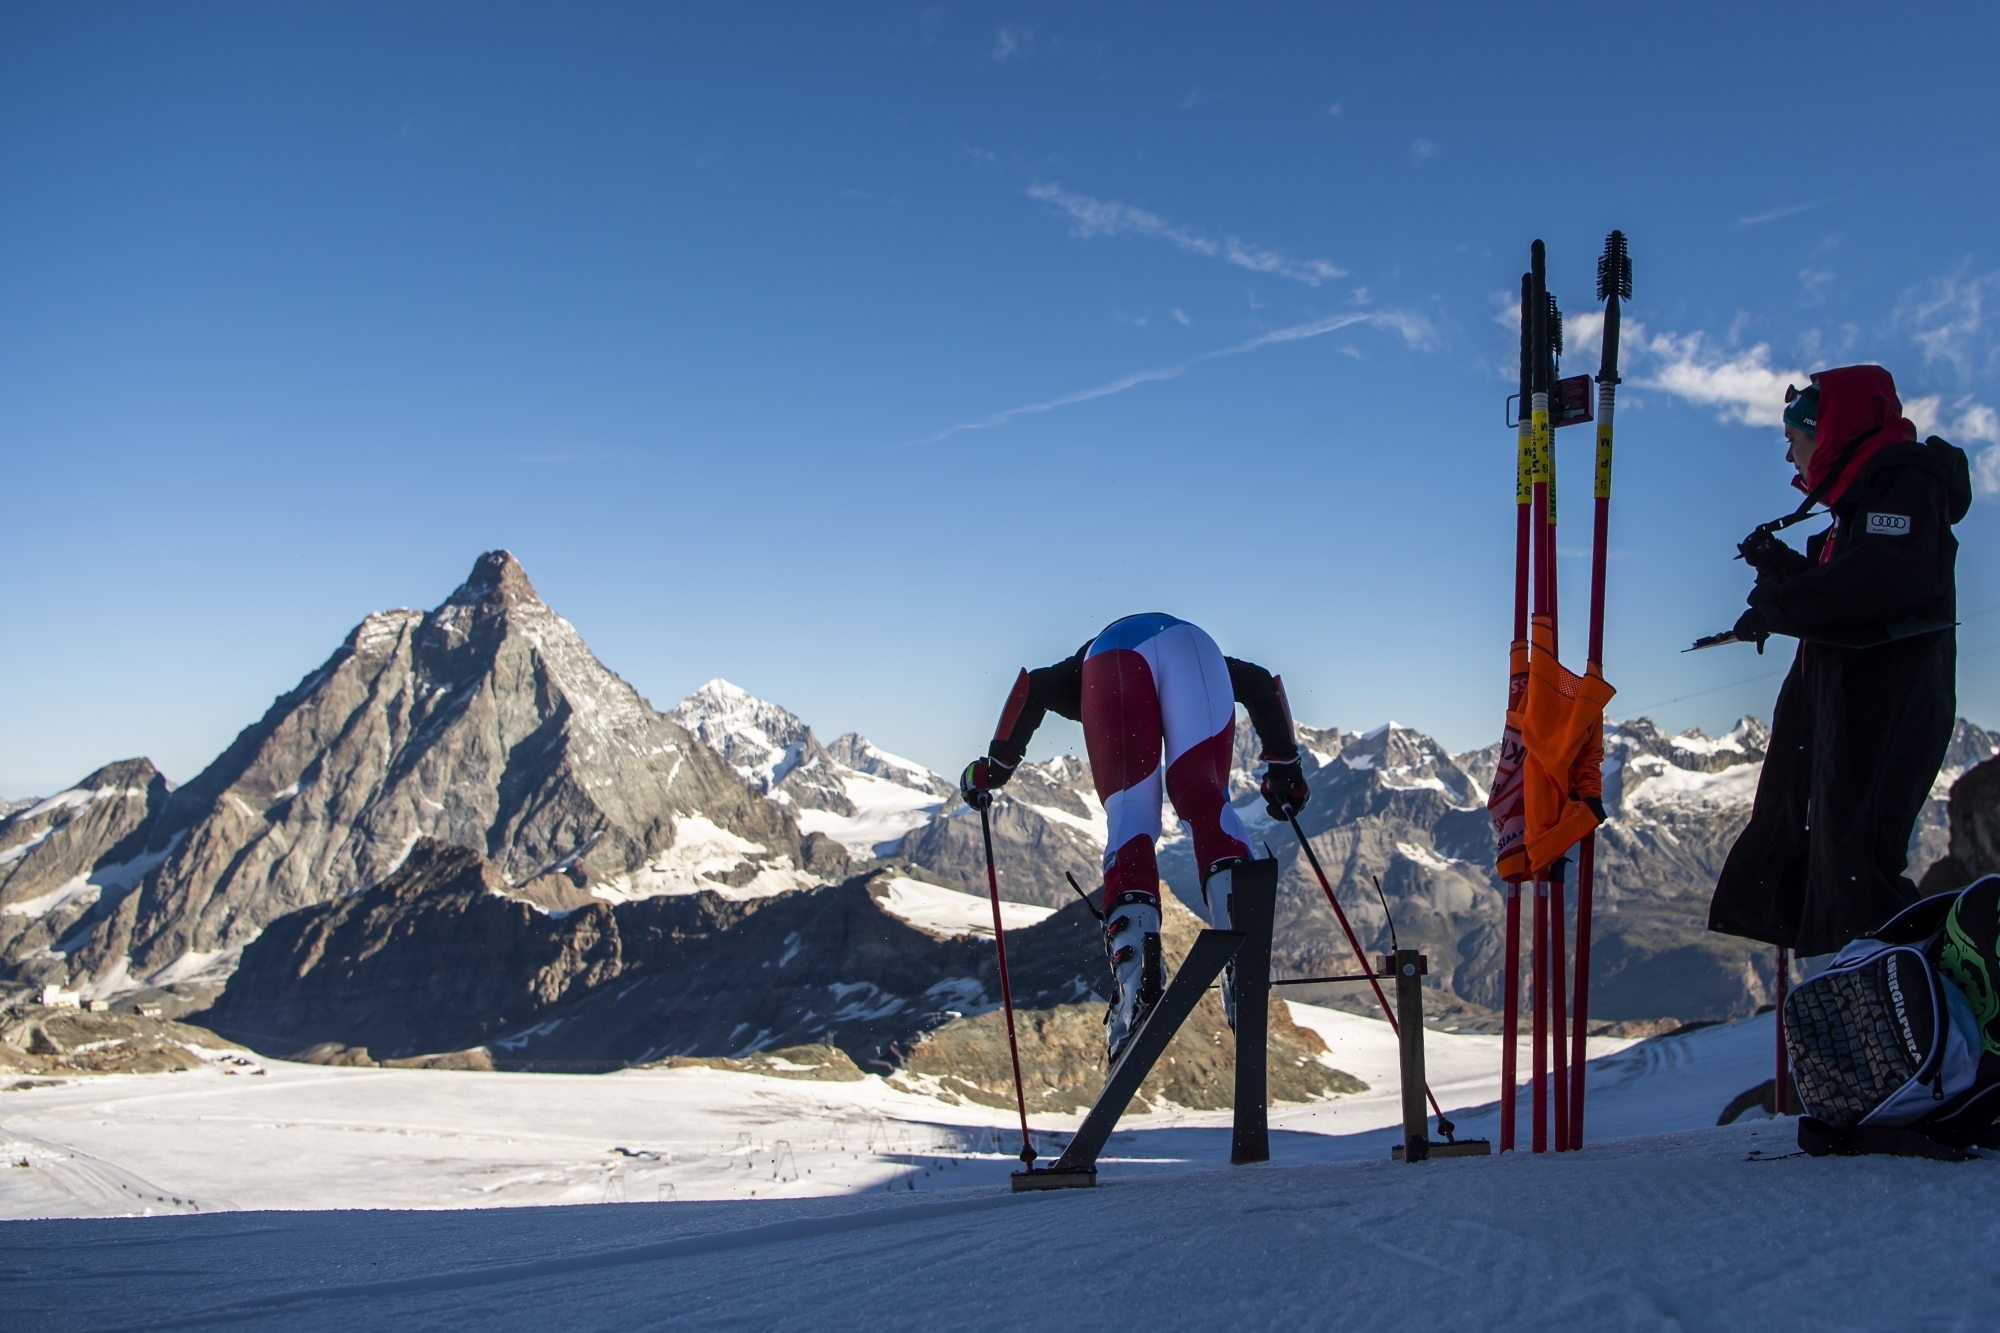 Les skieurs de Coupe du monde ont déjà leurs habitudes à Zermatt durant la préparation estivale.